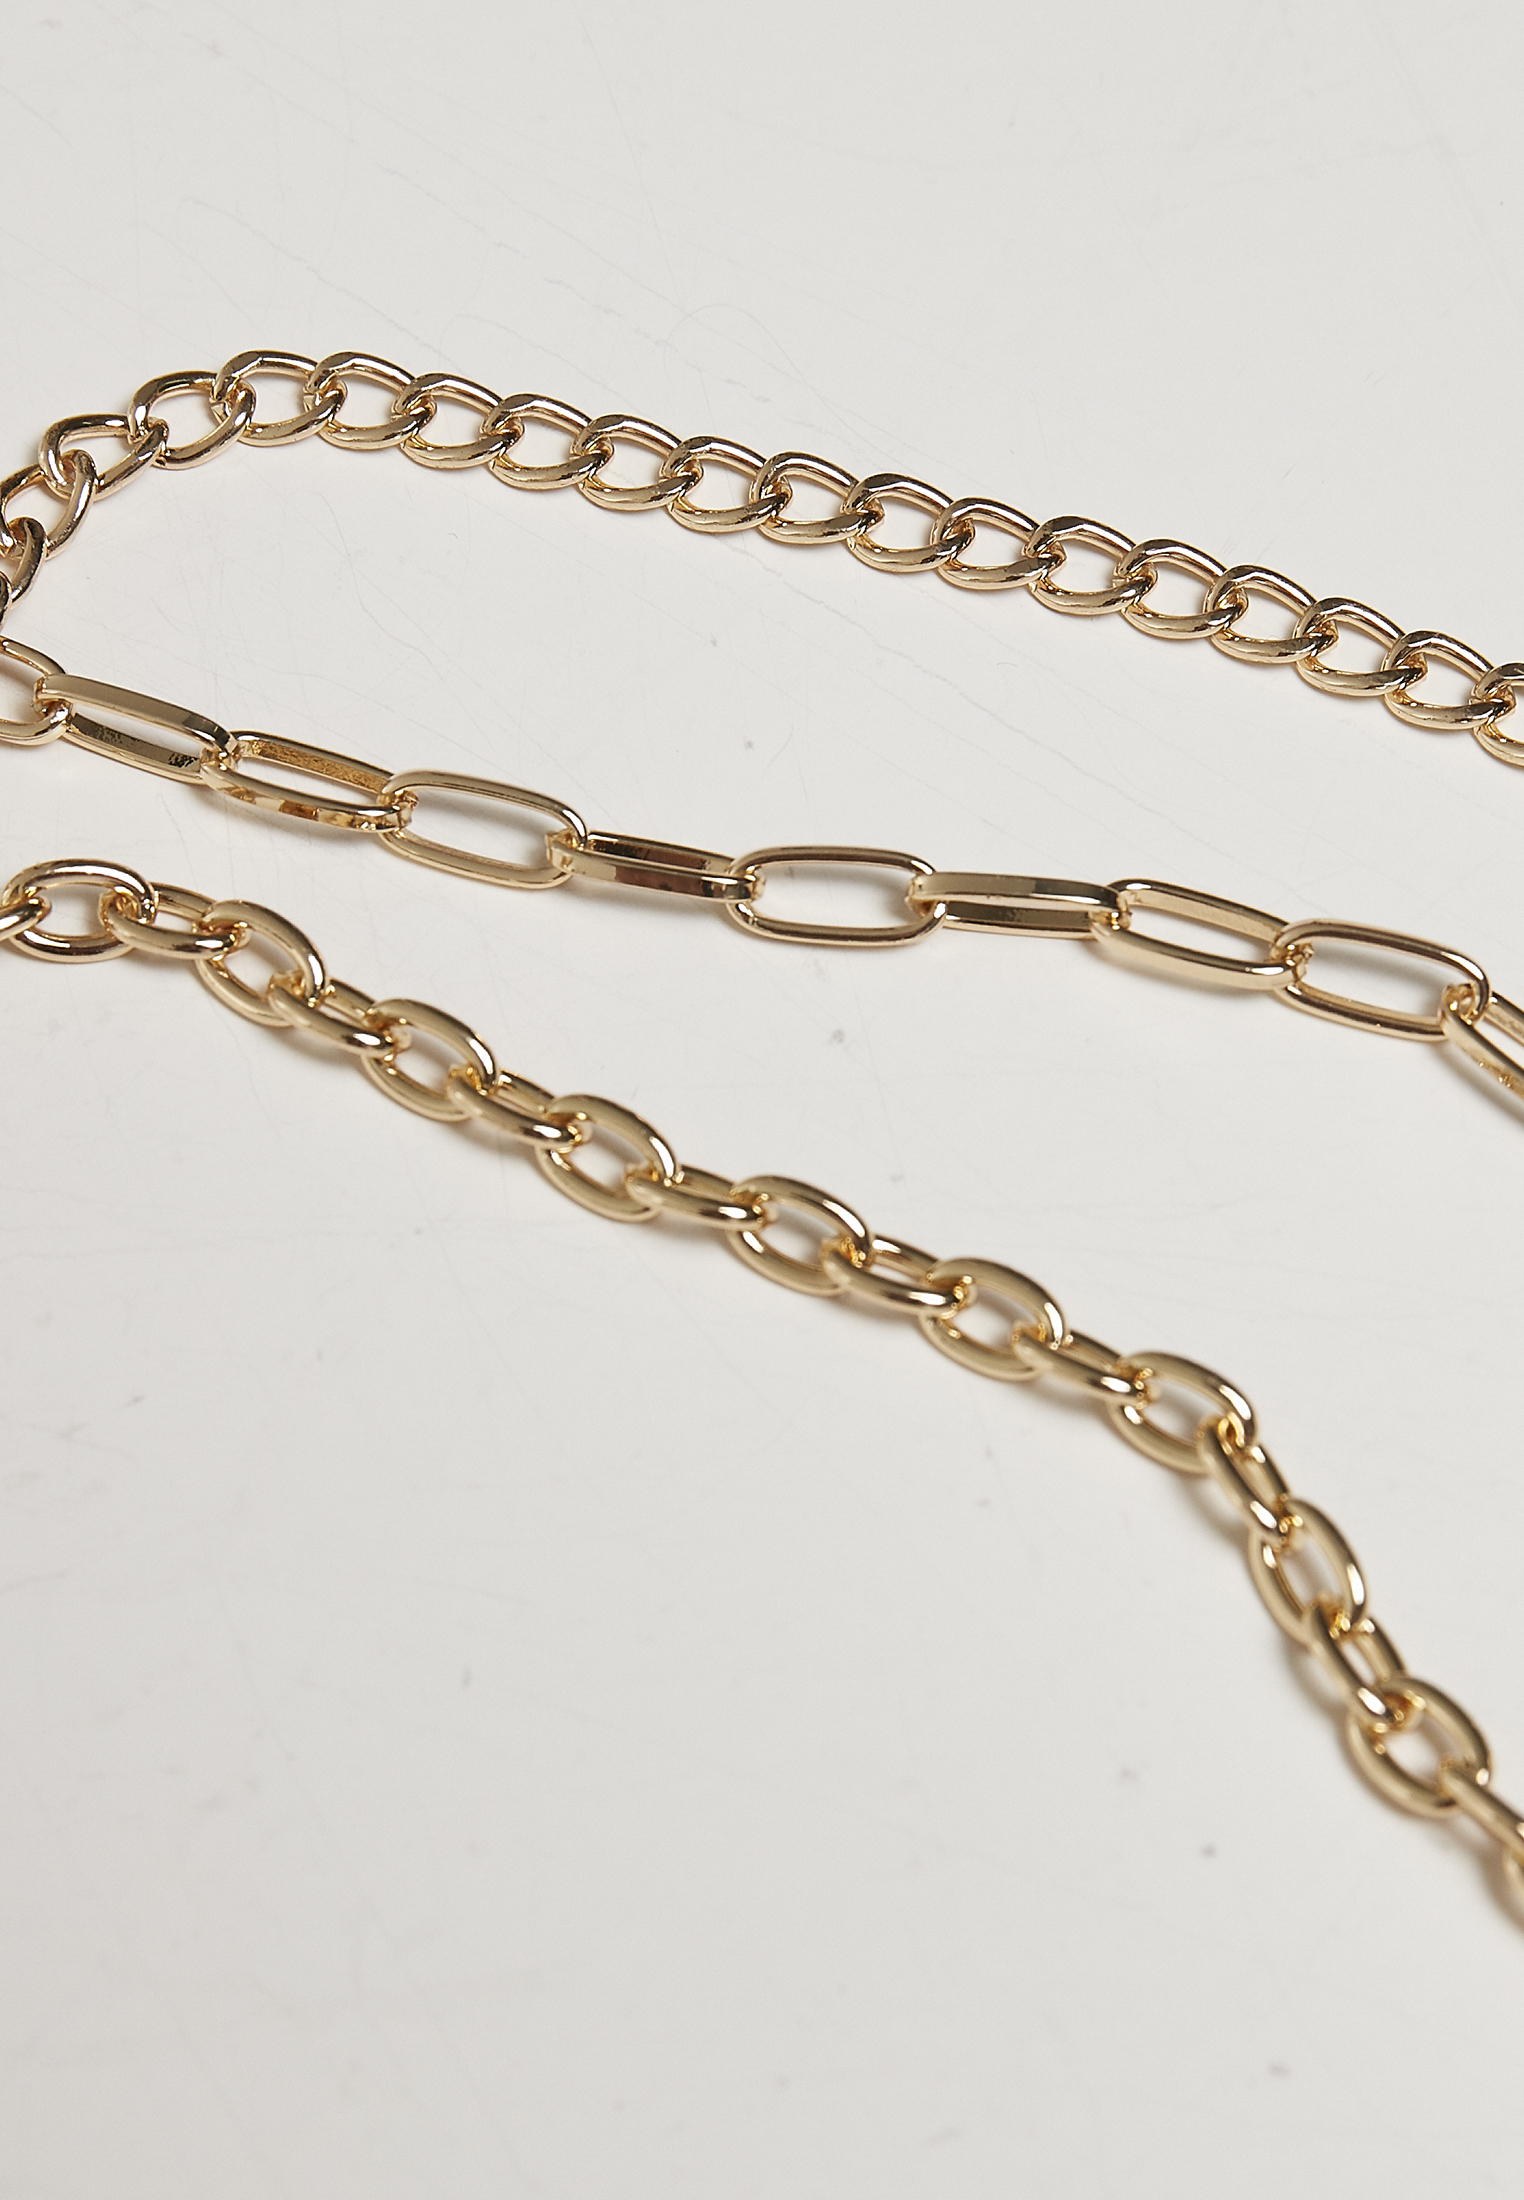 Razor Blade Necklace by Jessyka Robyn Jewelry – ShopAA